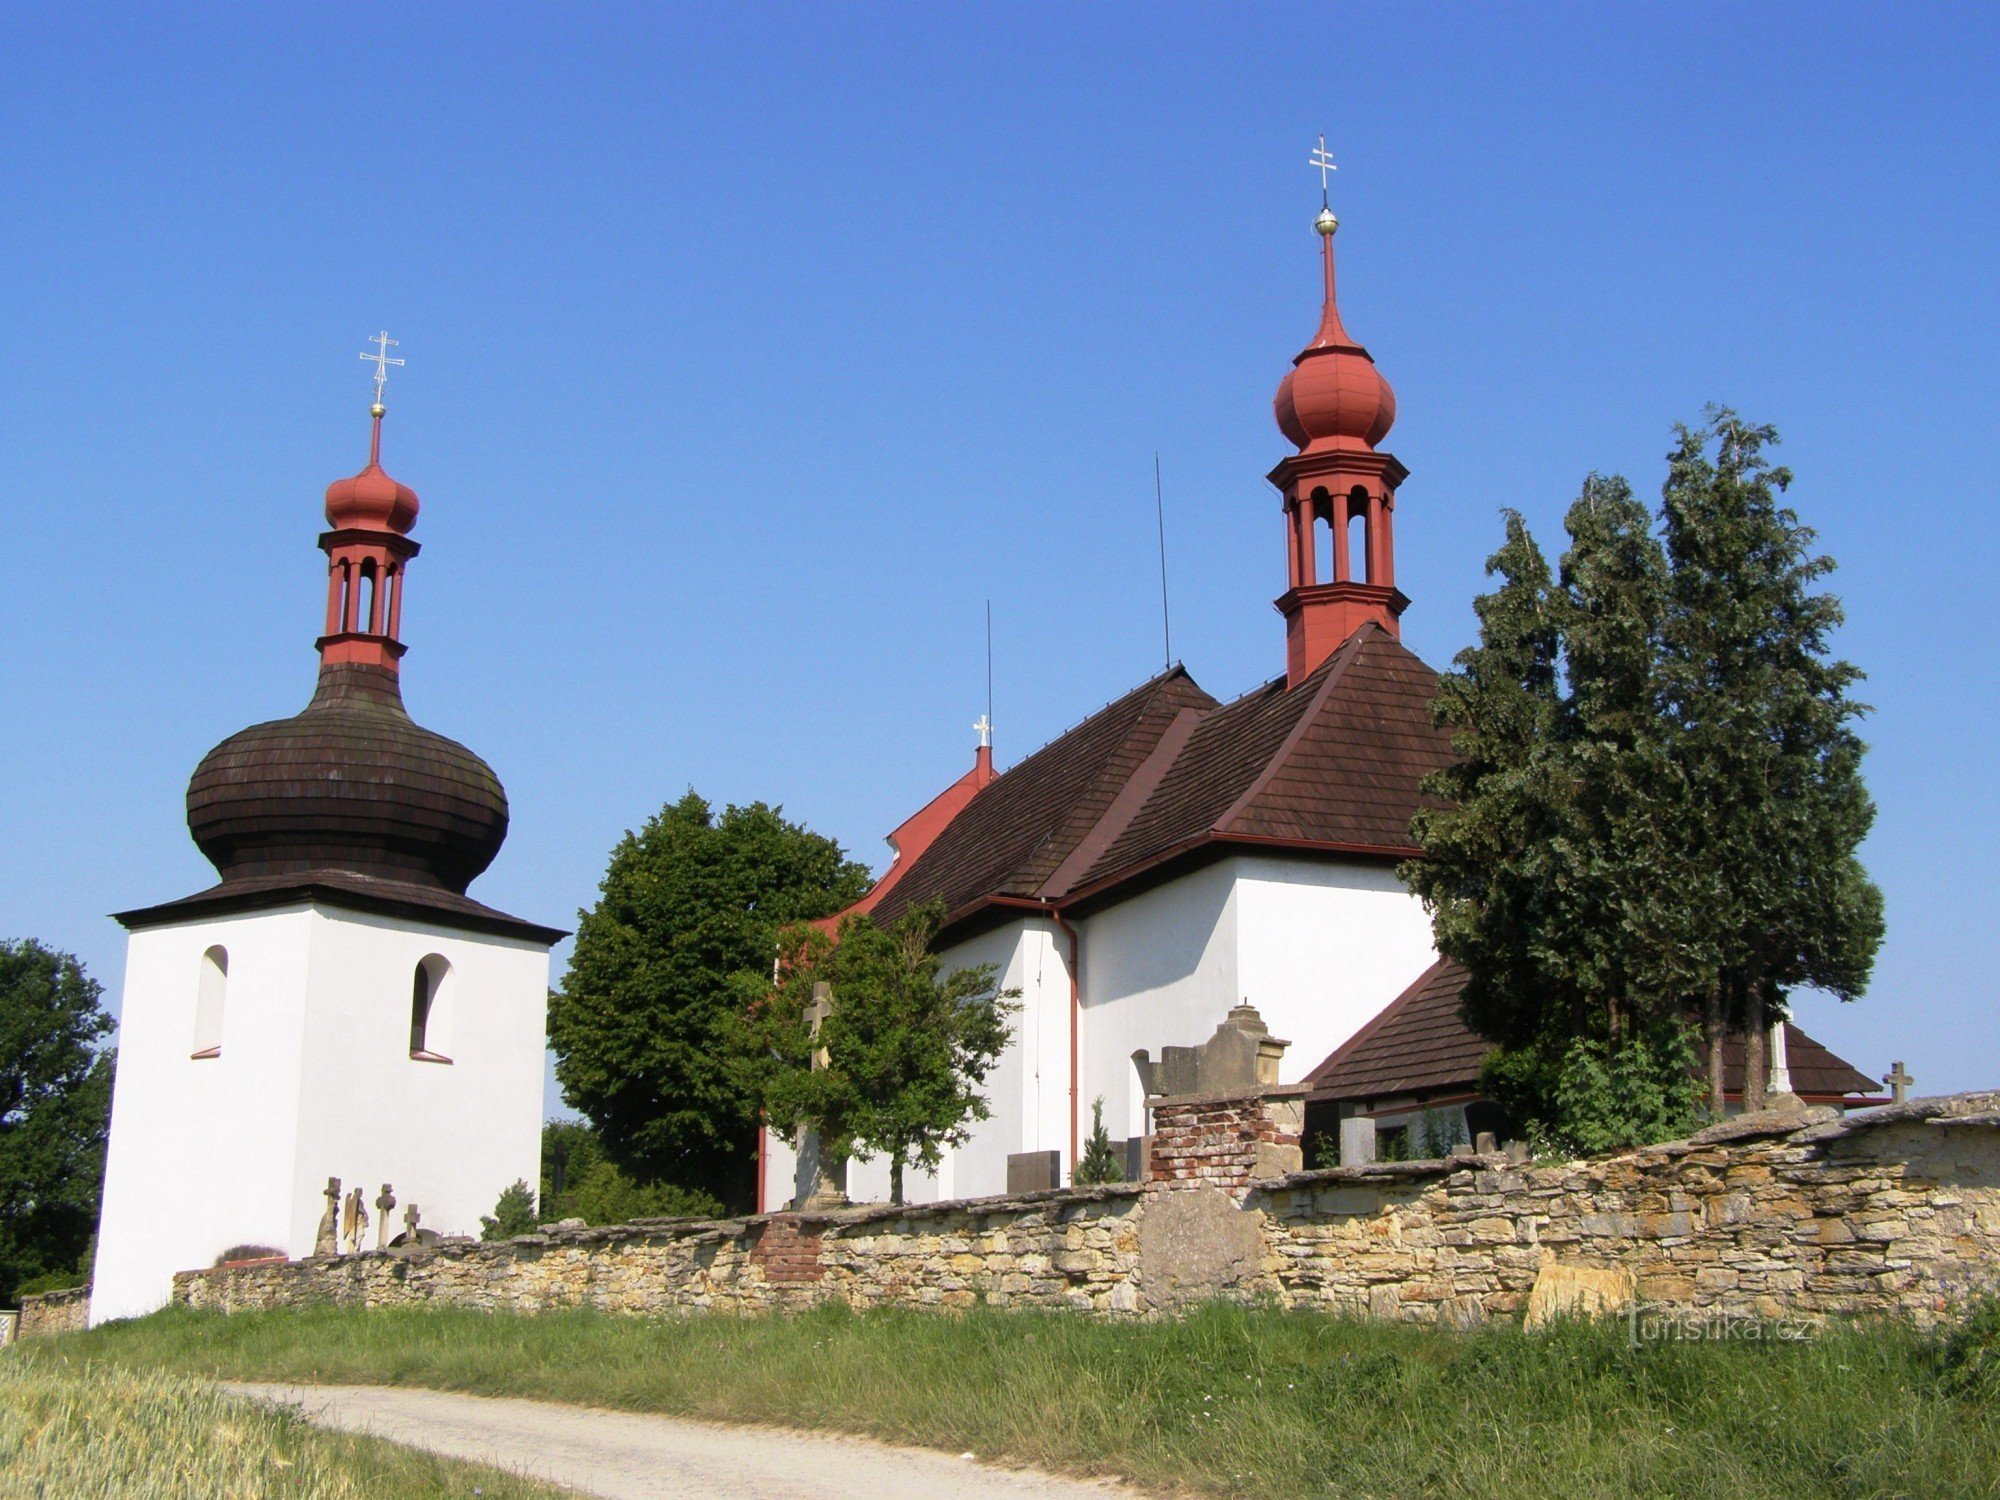 Dobruška - Biserica Sf. Spirit